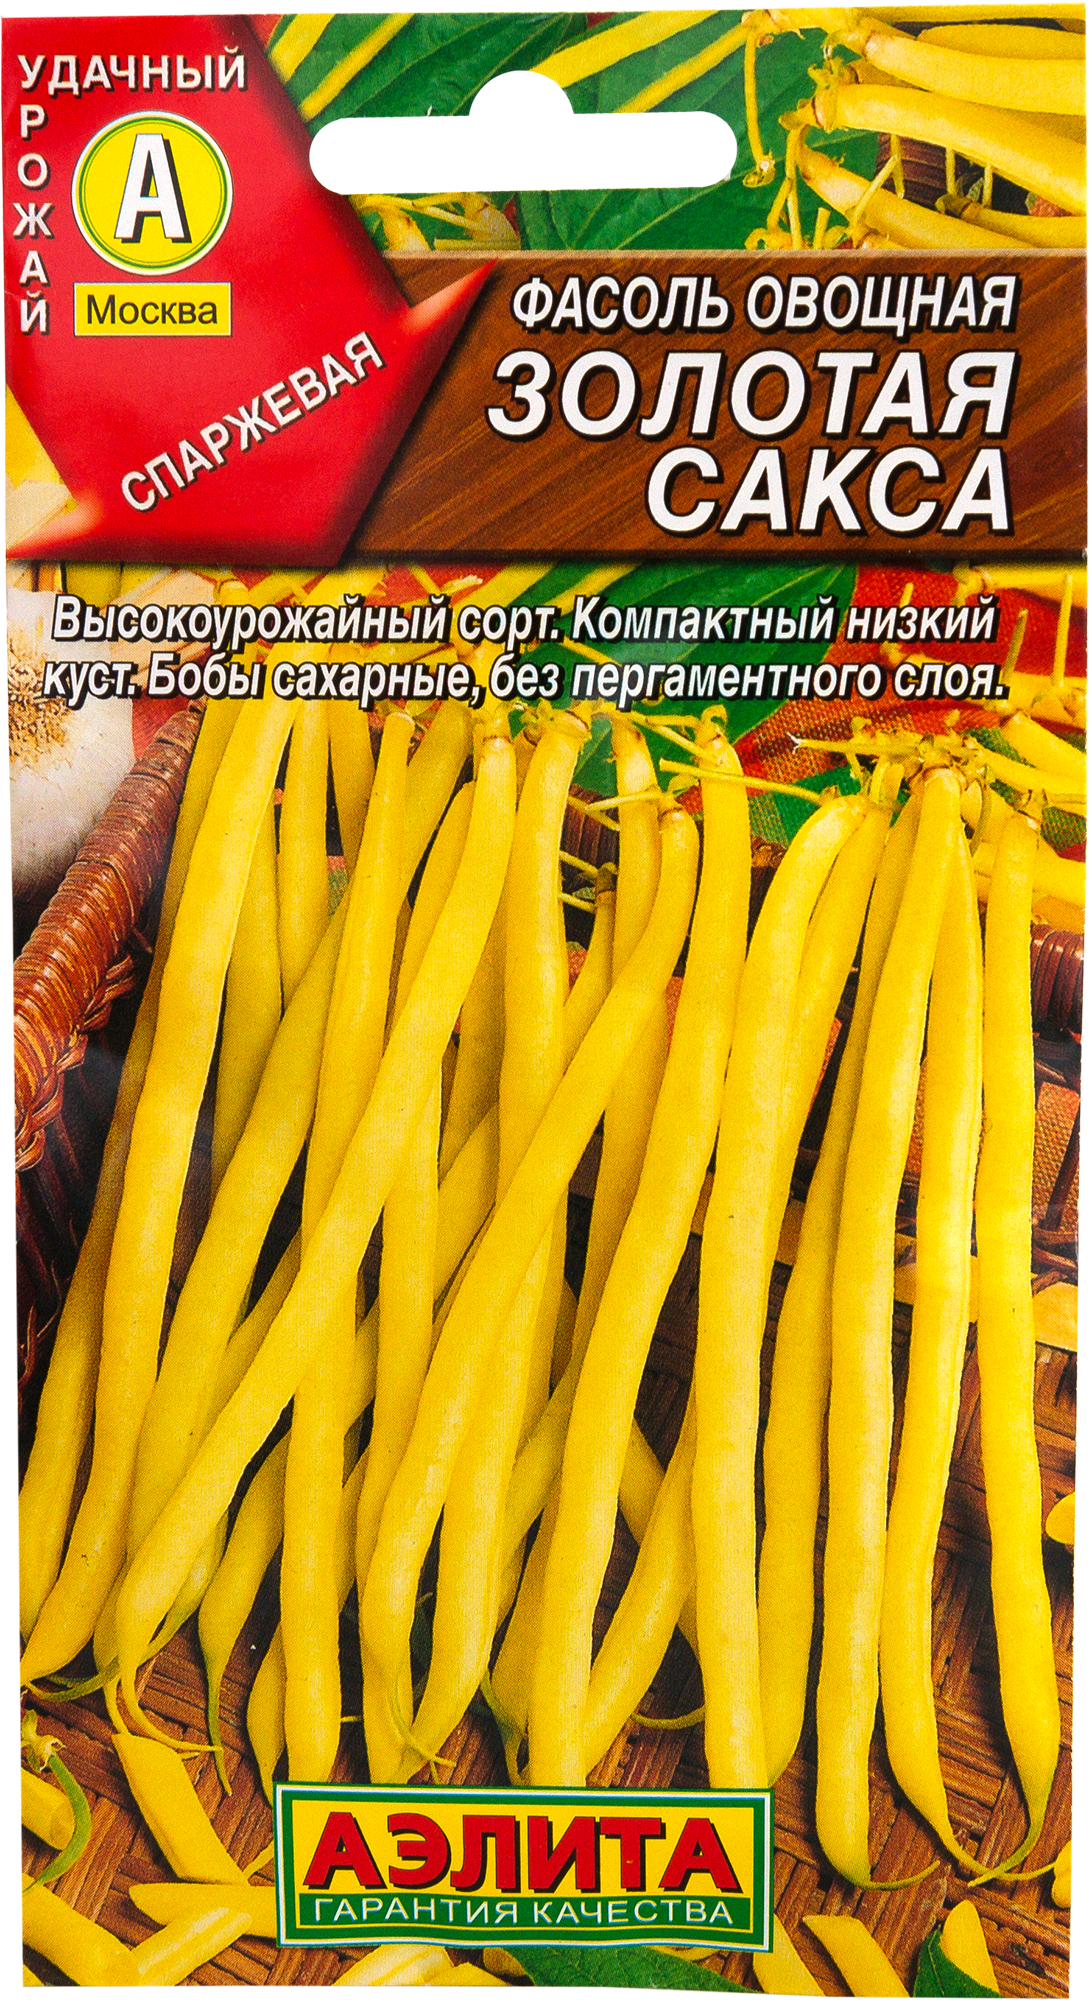 Семена Фасоль овощная «Золотая сакса» в Москве – купить по низкой цене винтернет-магазине Леруа Мерлен